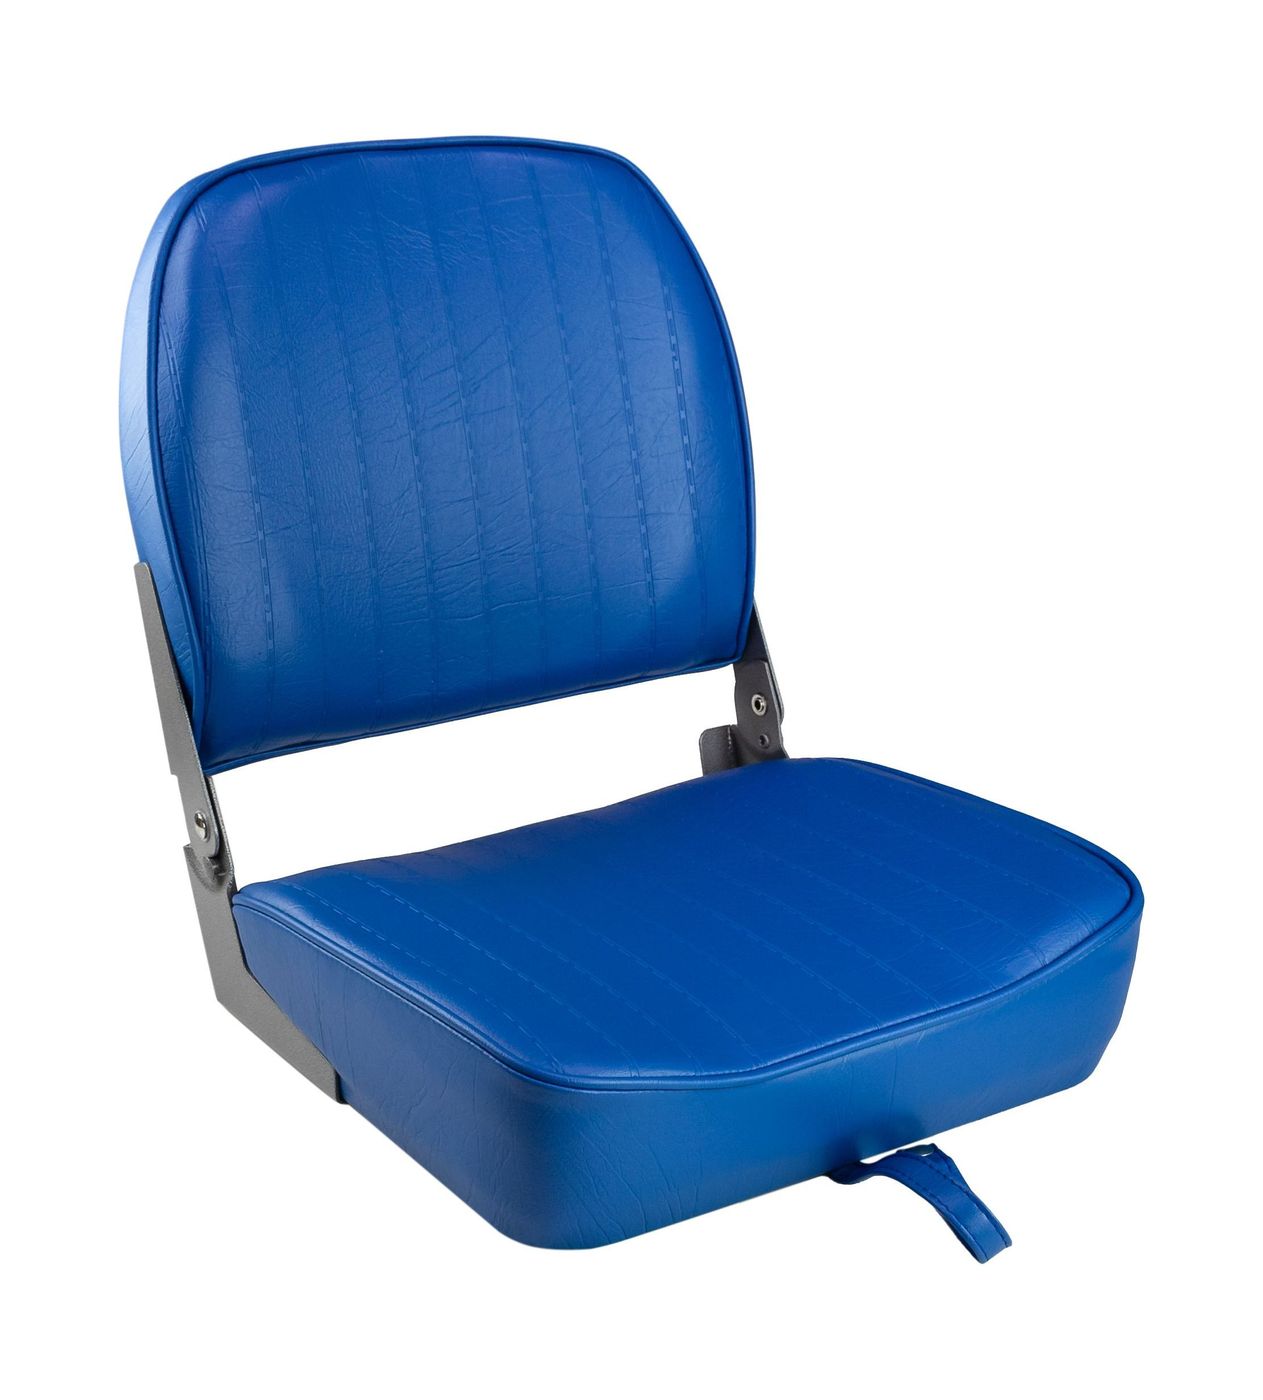 Кресло складное мягкое ECONOMY с низкой спинкой, цвет синий 1040621 кресло мягкое складное classic обивка винил серый синий marine rocket 75102gb mr